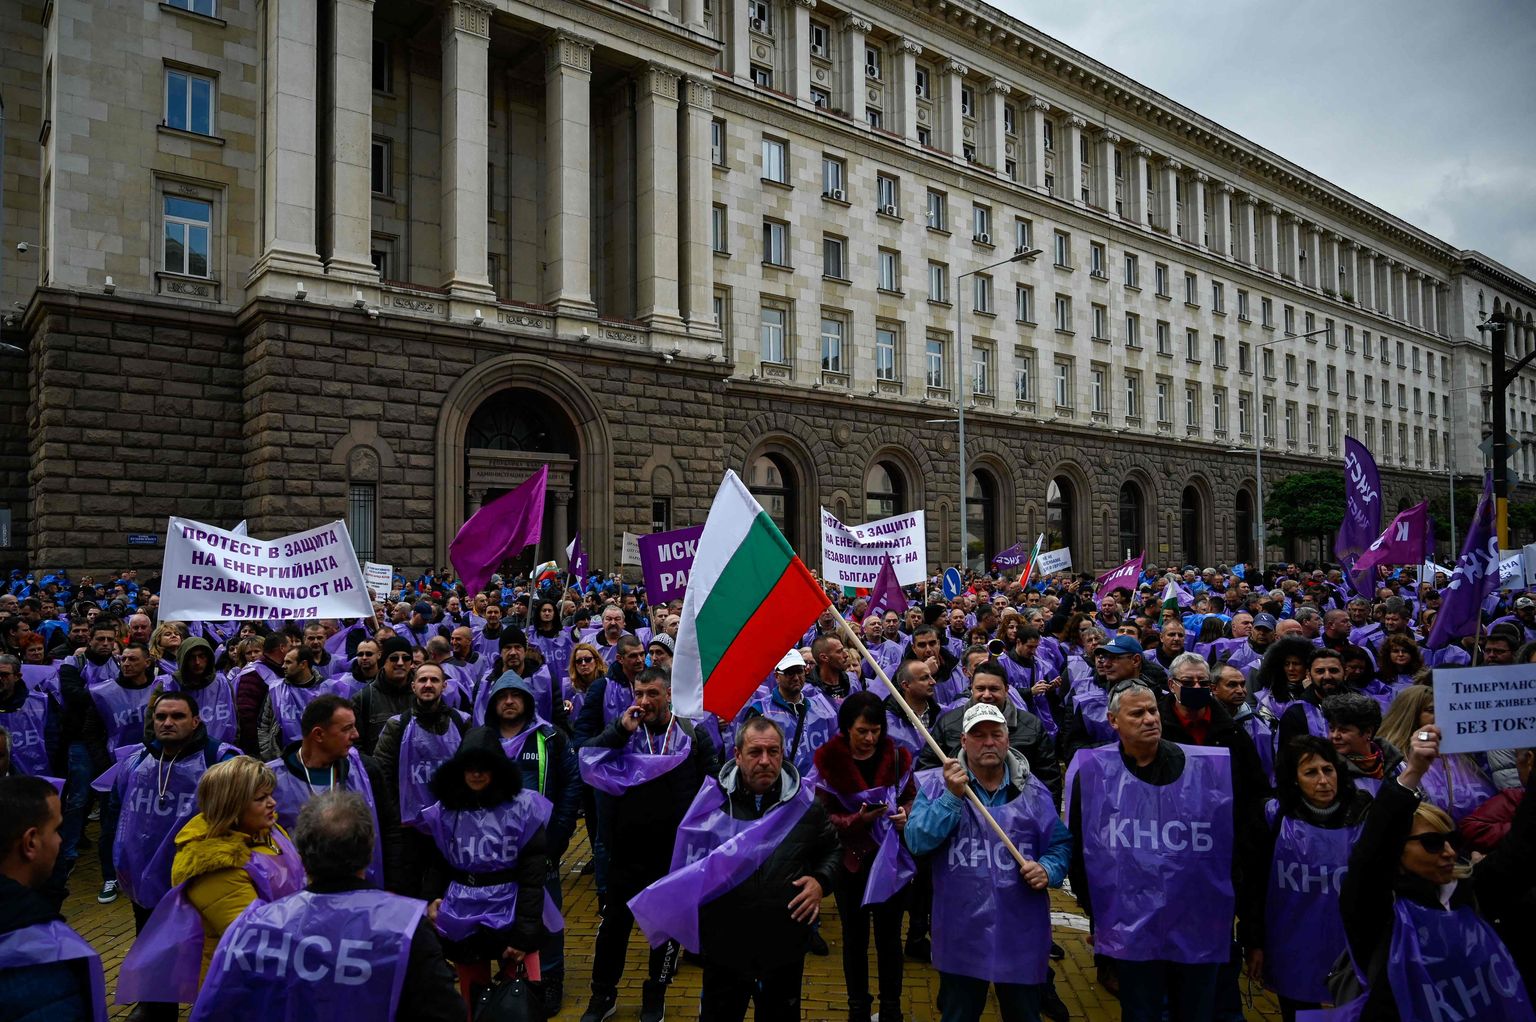 Protestētāji Bulgārijas galvaspilsētā Sofijā tur valsts karogus un kliedz saukļus pret Bulgārijas valdības plāniem slēgt elektroenerģijas ražotnes, kas darbojas ar oglēm.